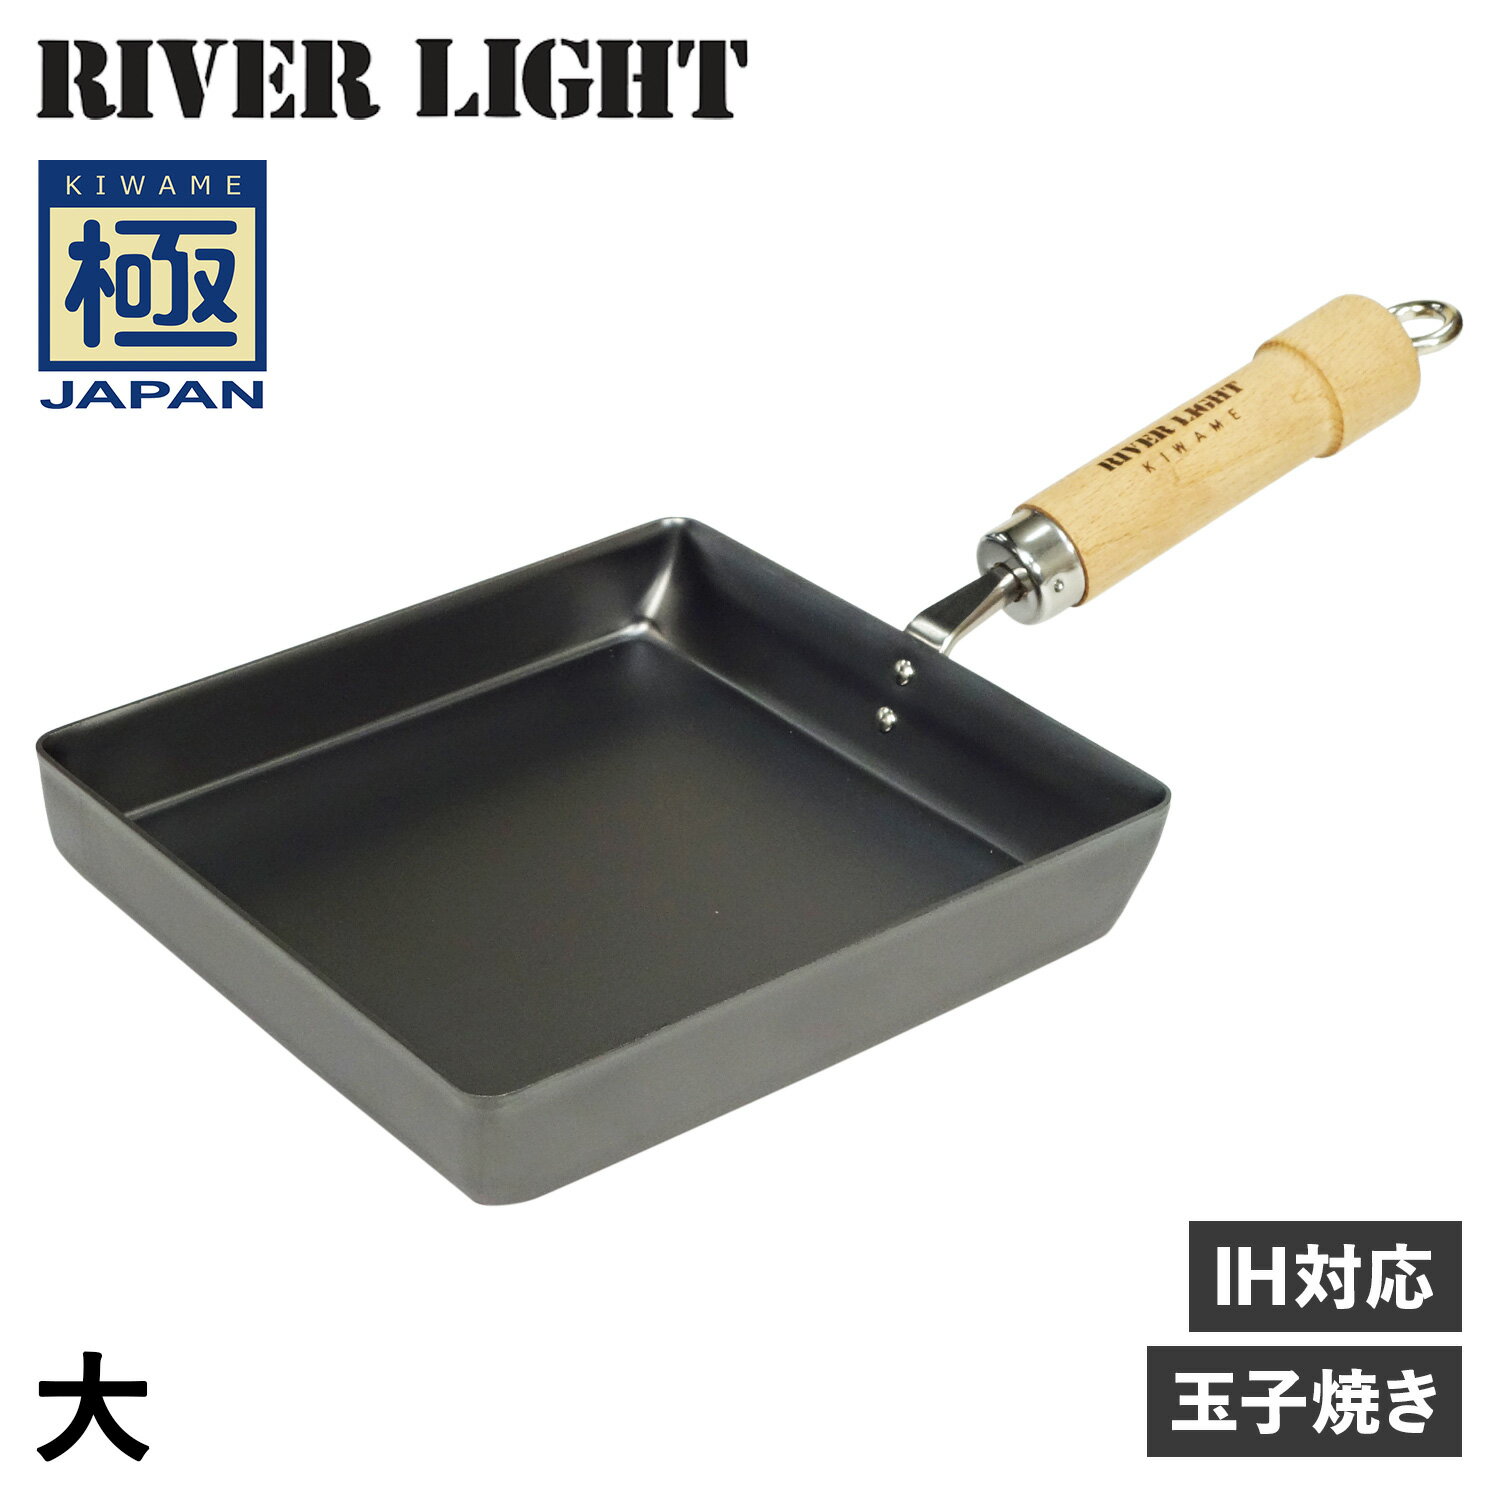 RIVER LIGHT 極JAPAN リバーライト 極 卵焼き器 フライパン 大 IH ガス対応 鉄 J1618 アウトドア